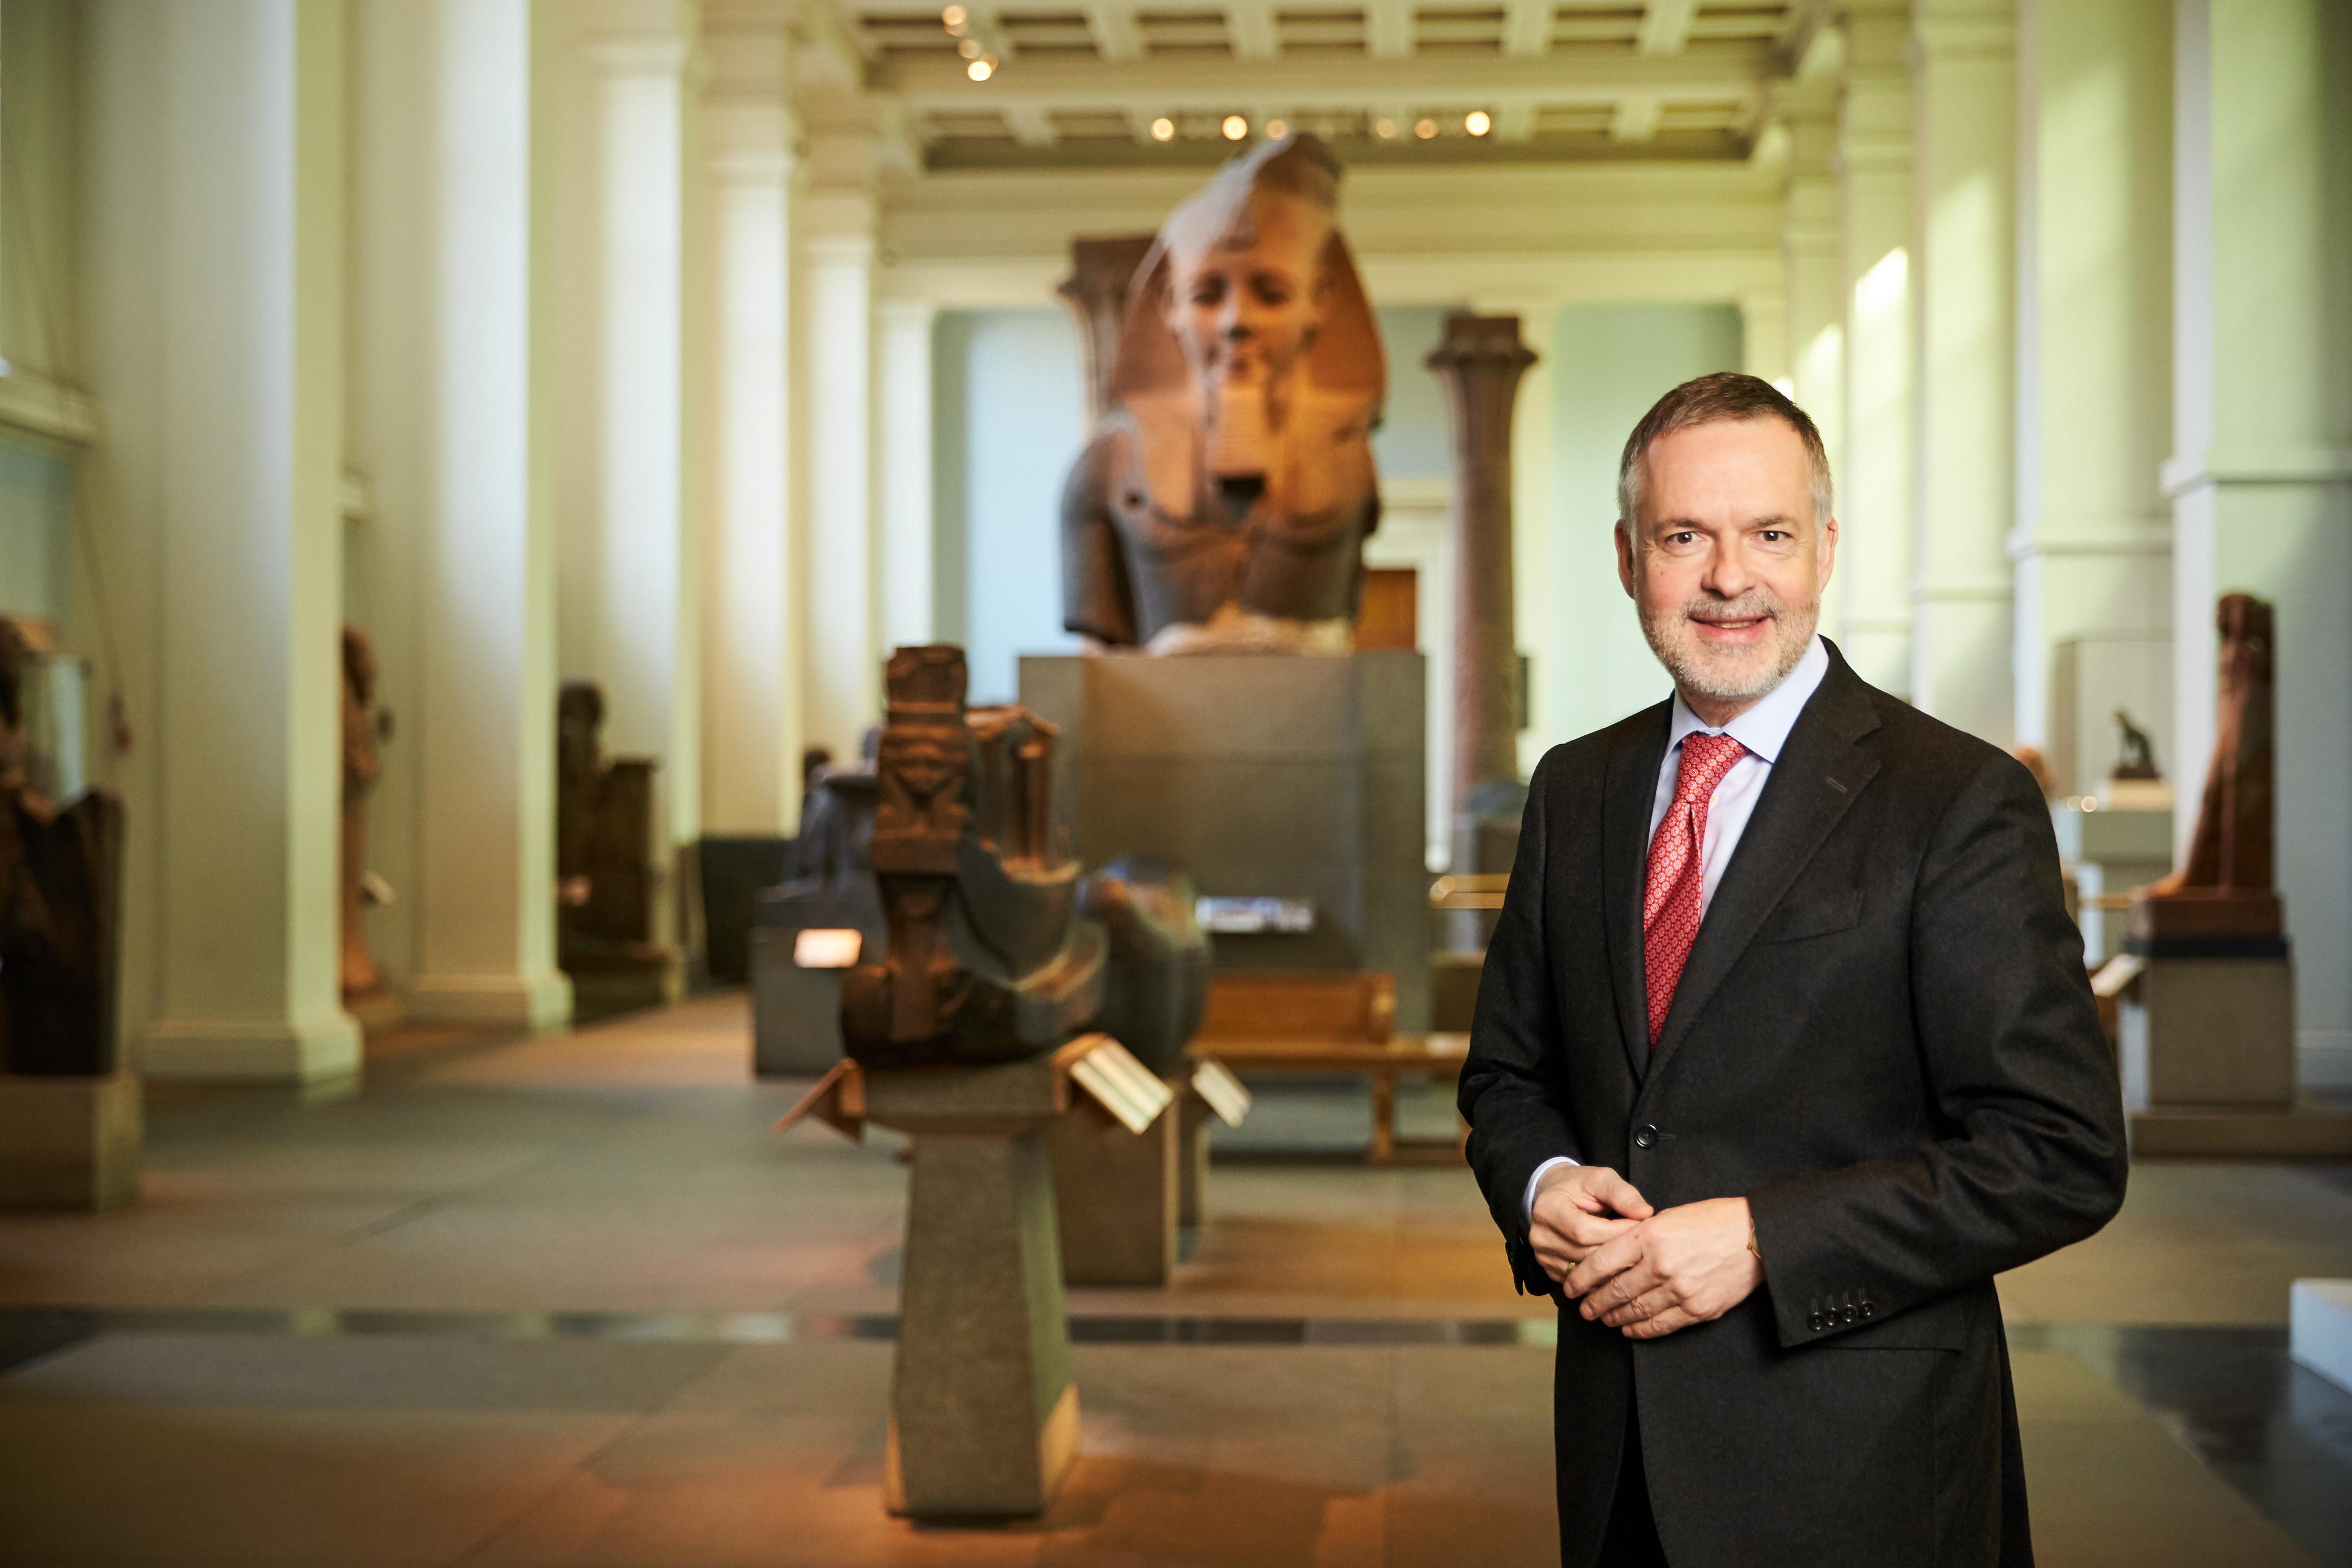 Muchos robos en el Museo Británico, el director dimite: ¿qué pasó?